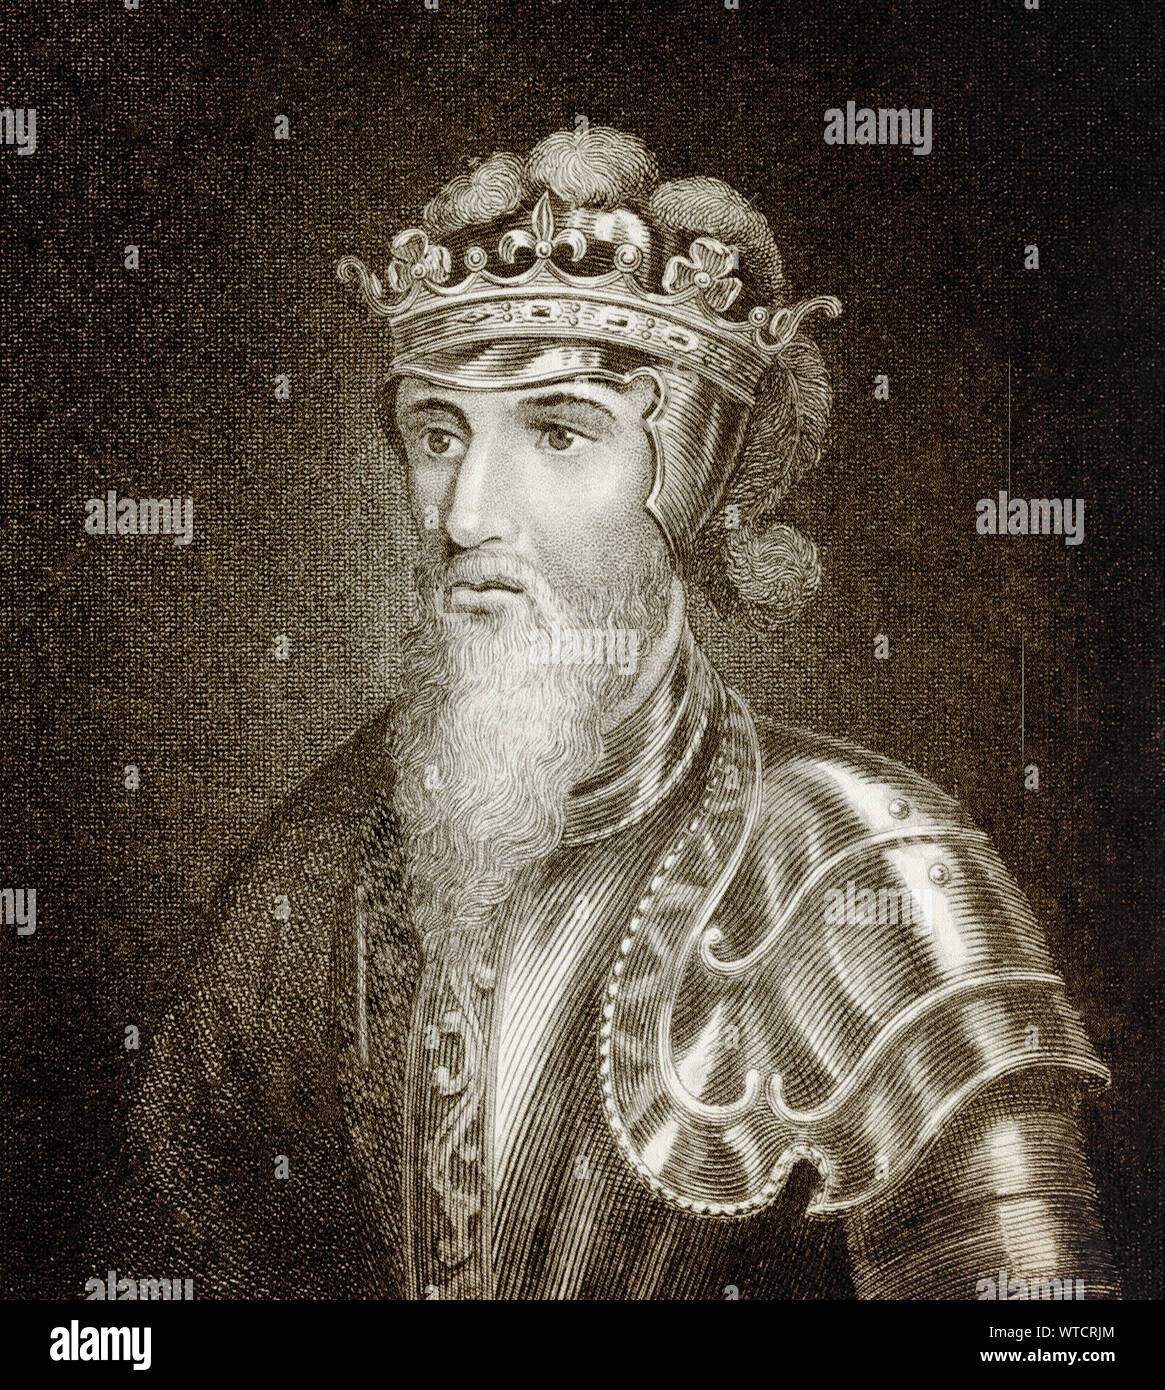 Édouard III (1312 - 1377) fut roi d'Angleterre et Seigneur d'Irlande à partir de janvier 1327 jusqu'à sa mort ; il est connu pour ses succès militaires et de resto Banque D'Images